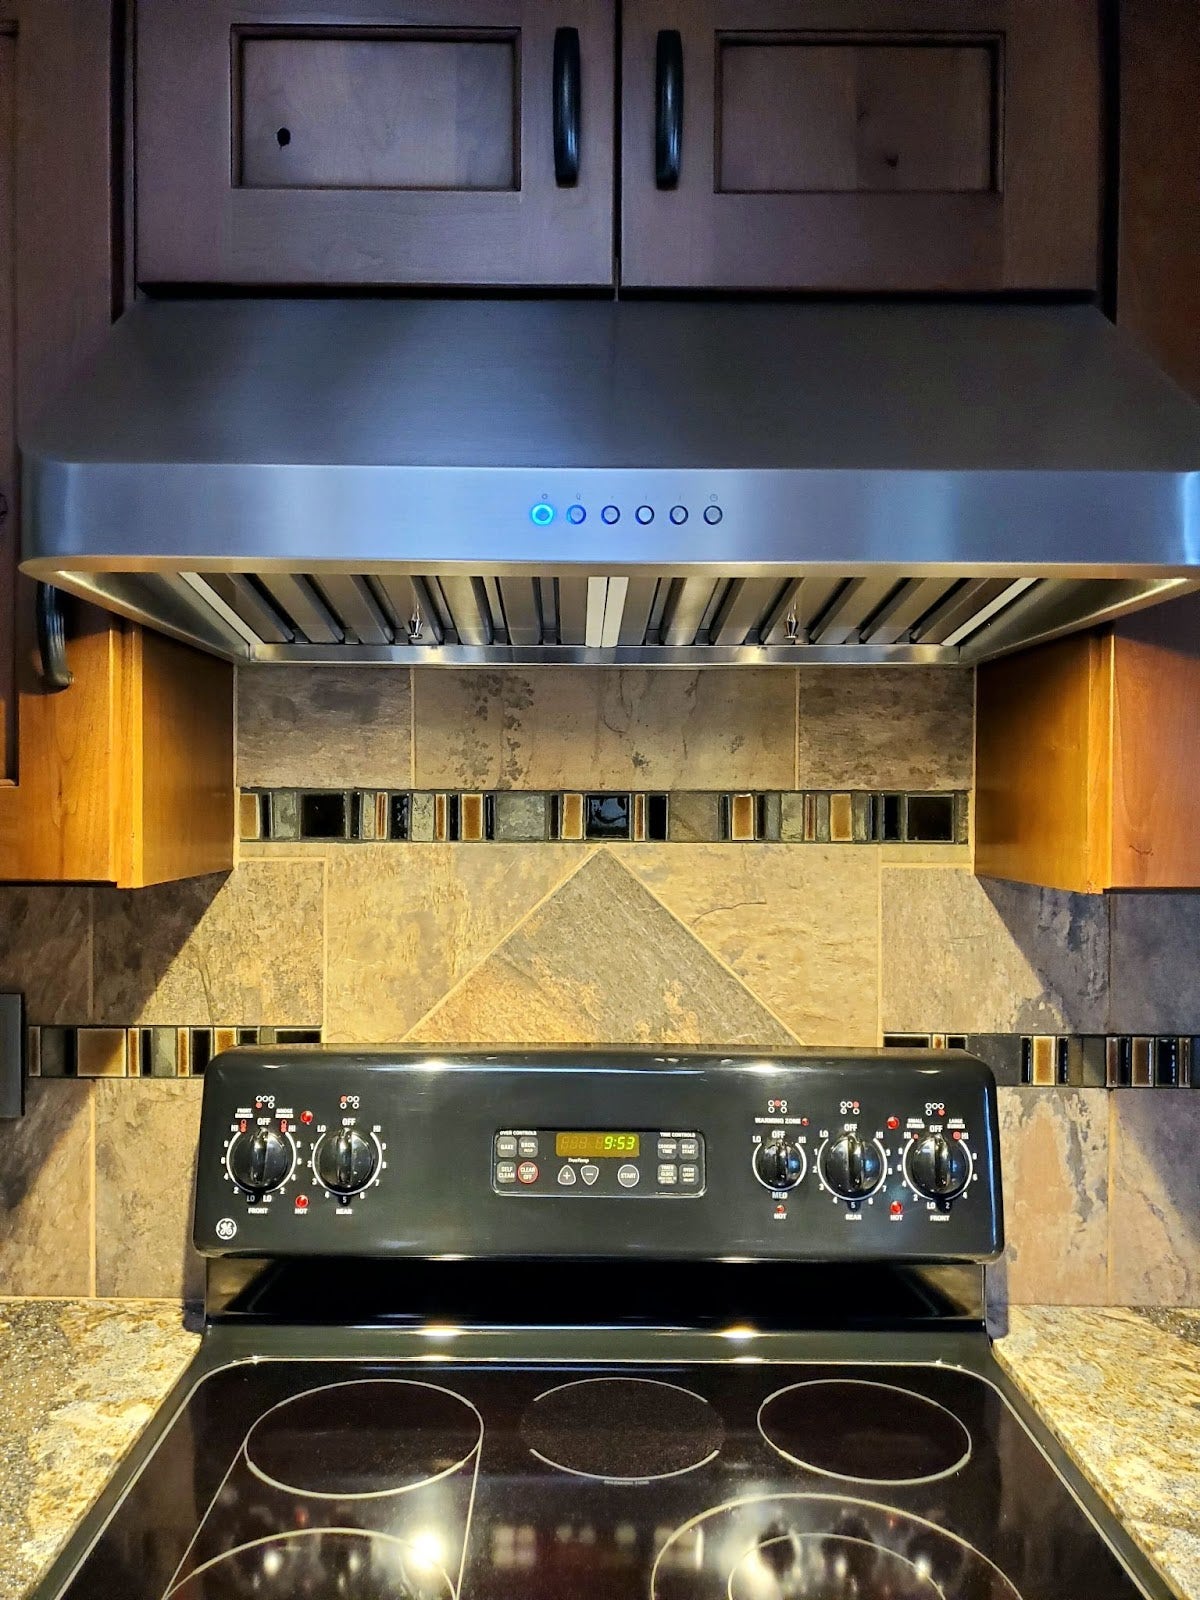 Kitchen with mosaic tile backsplash, Proline range hood, and stainless steel appliances. - Proline Range Hoods - prolinerangehoods.com 